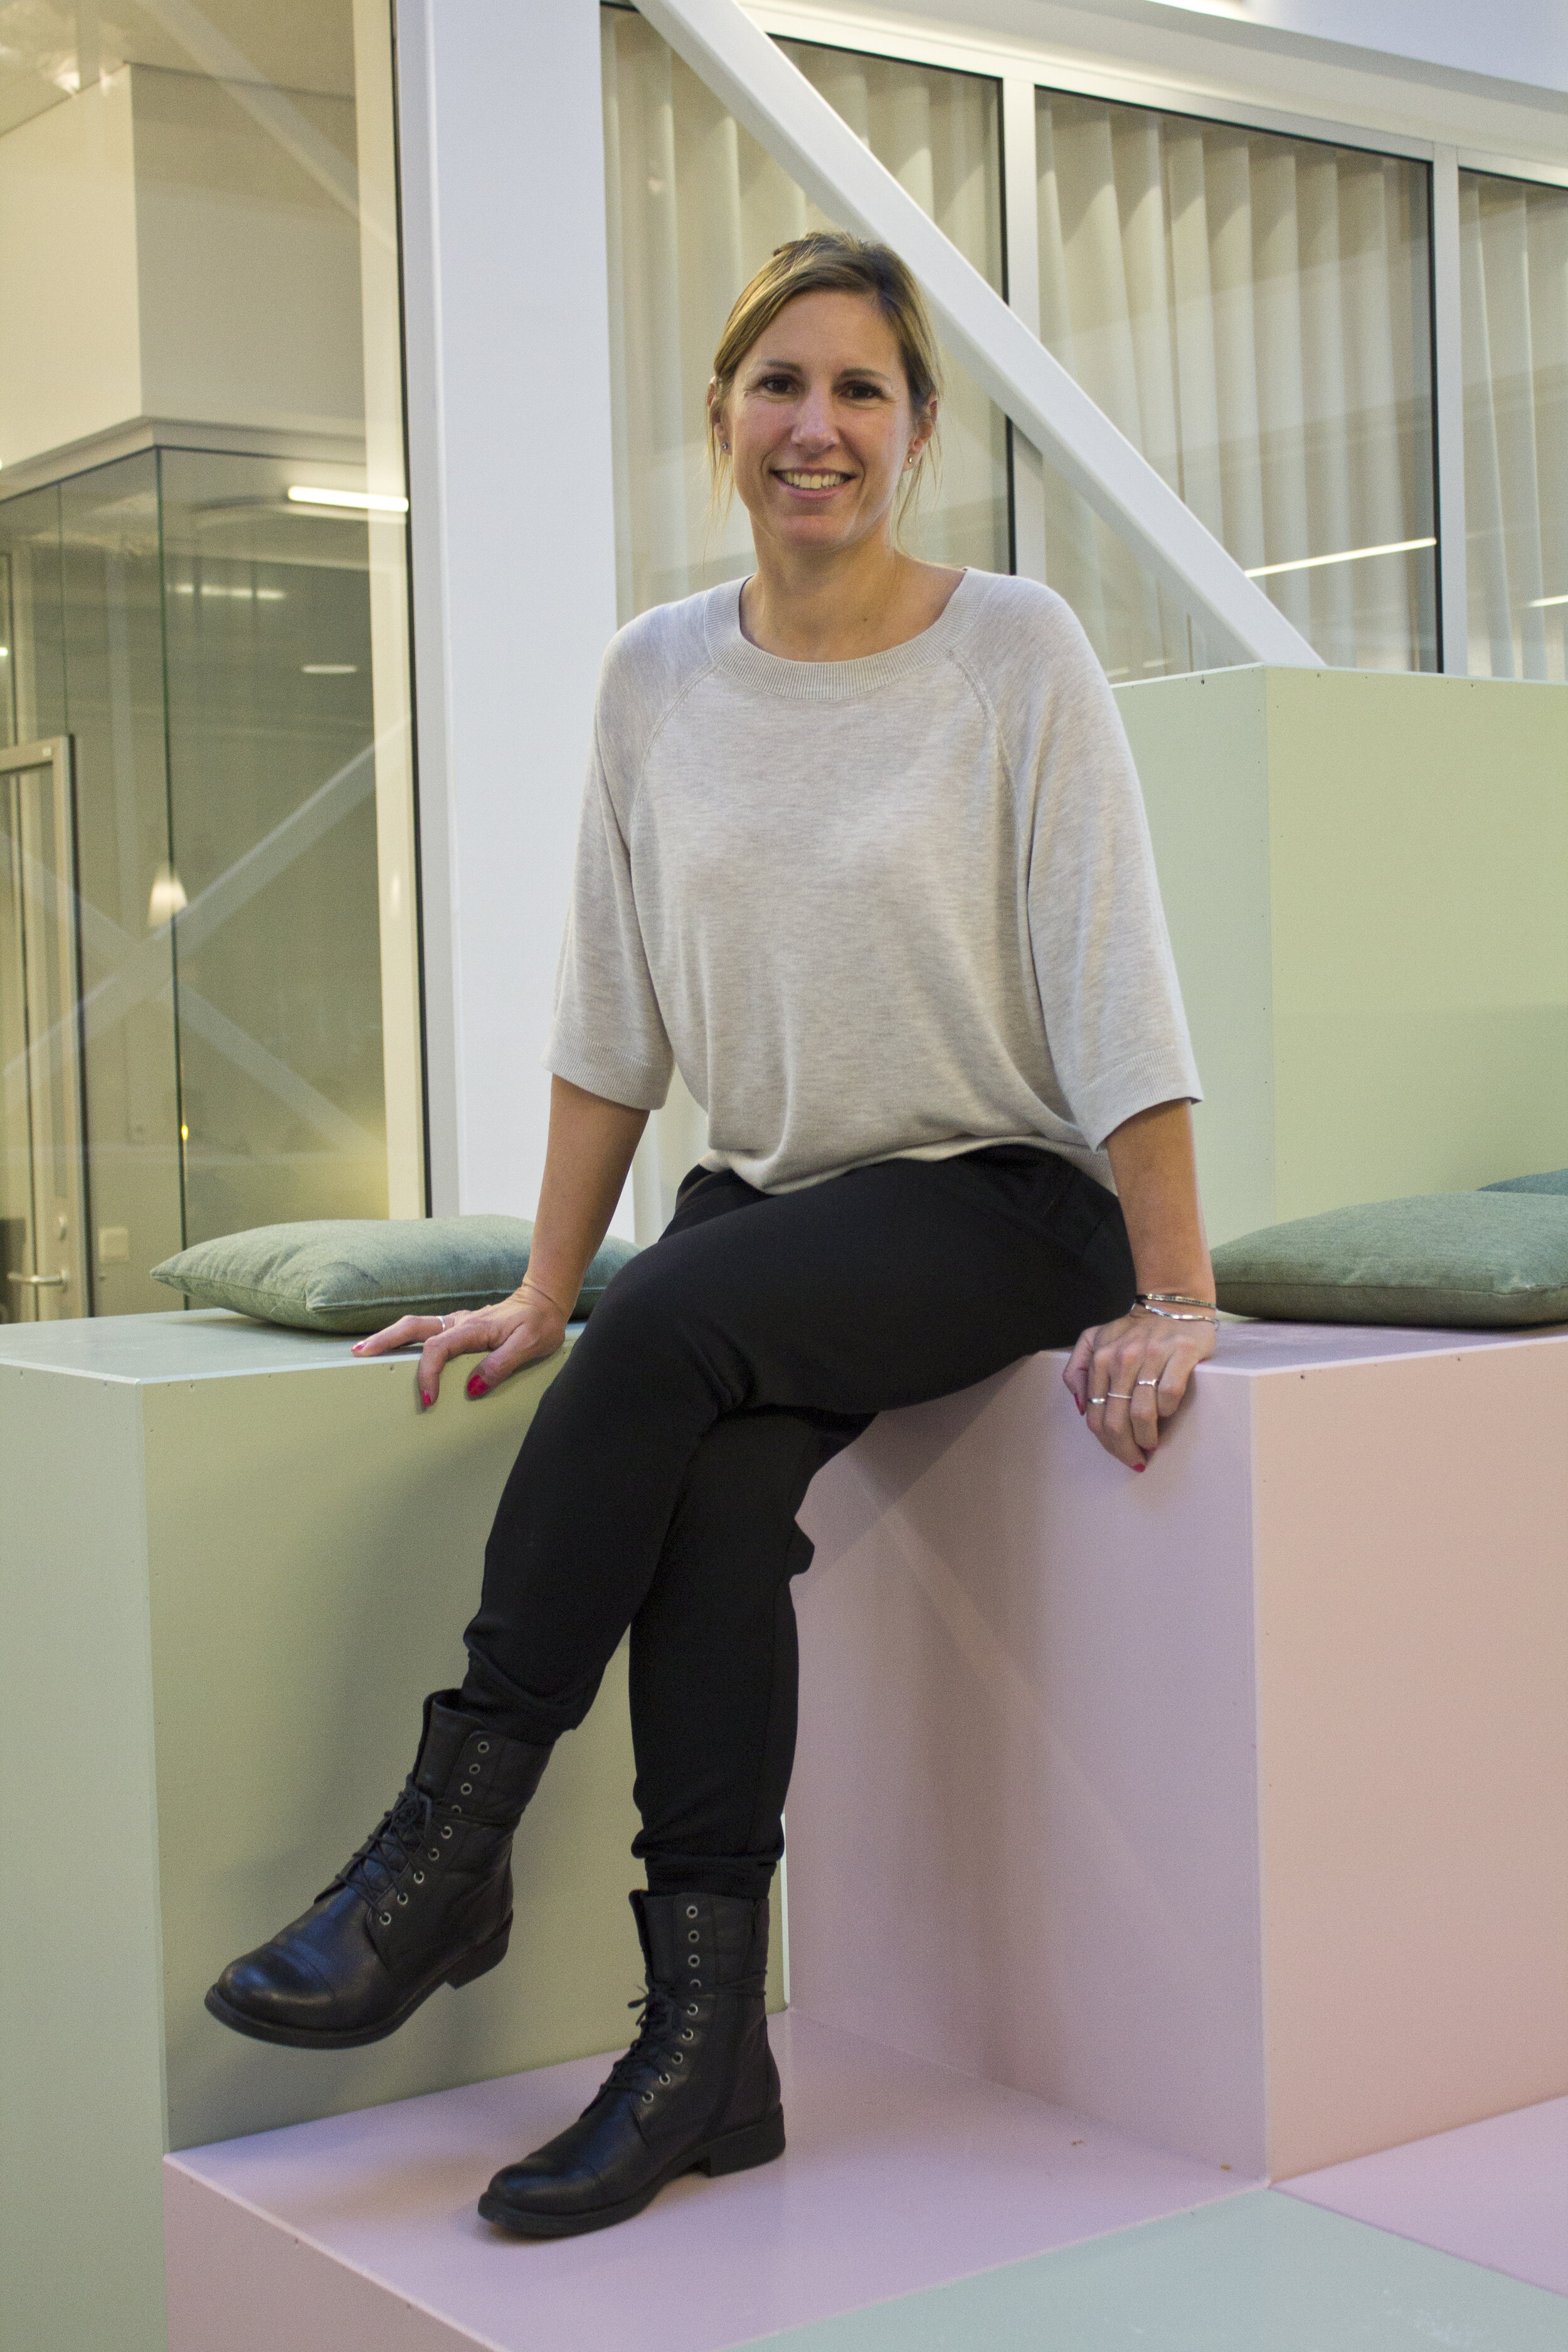 Alexandra Bylund är en del av Bossbloggens framtid